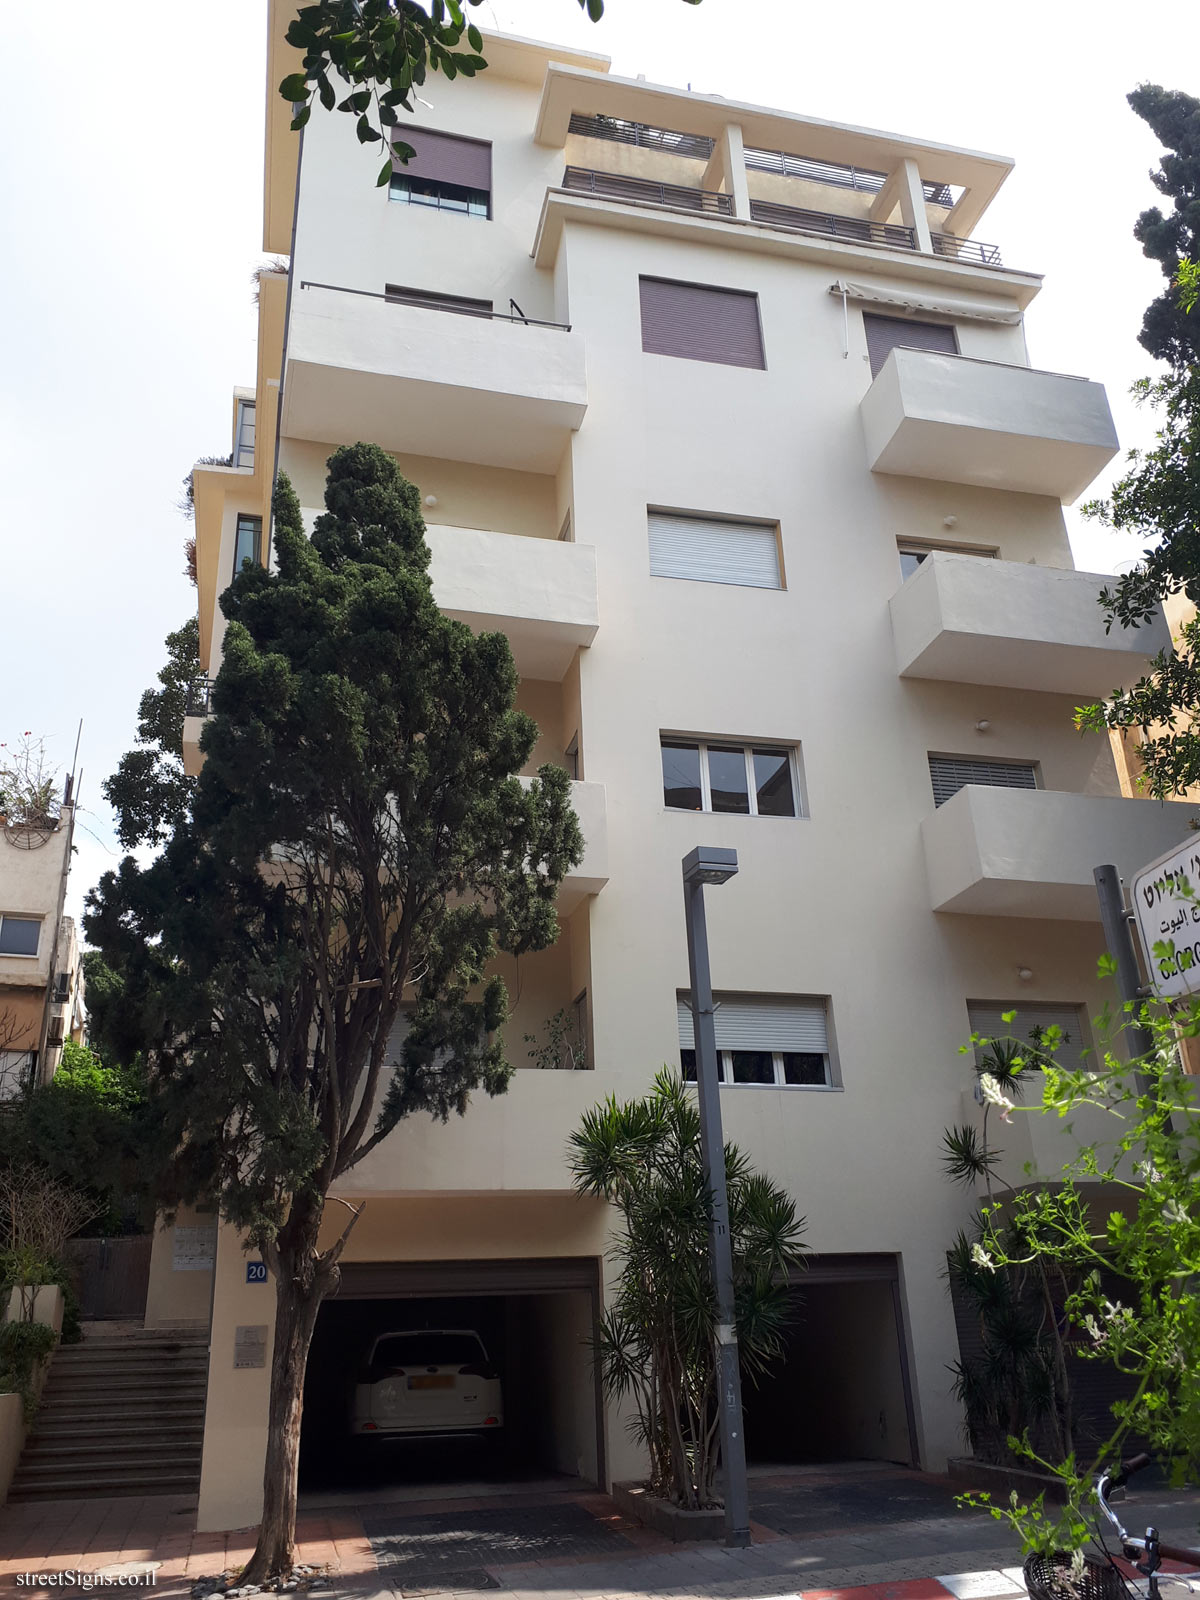 Tel Aviv - buildings for conservation - Melchett 20